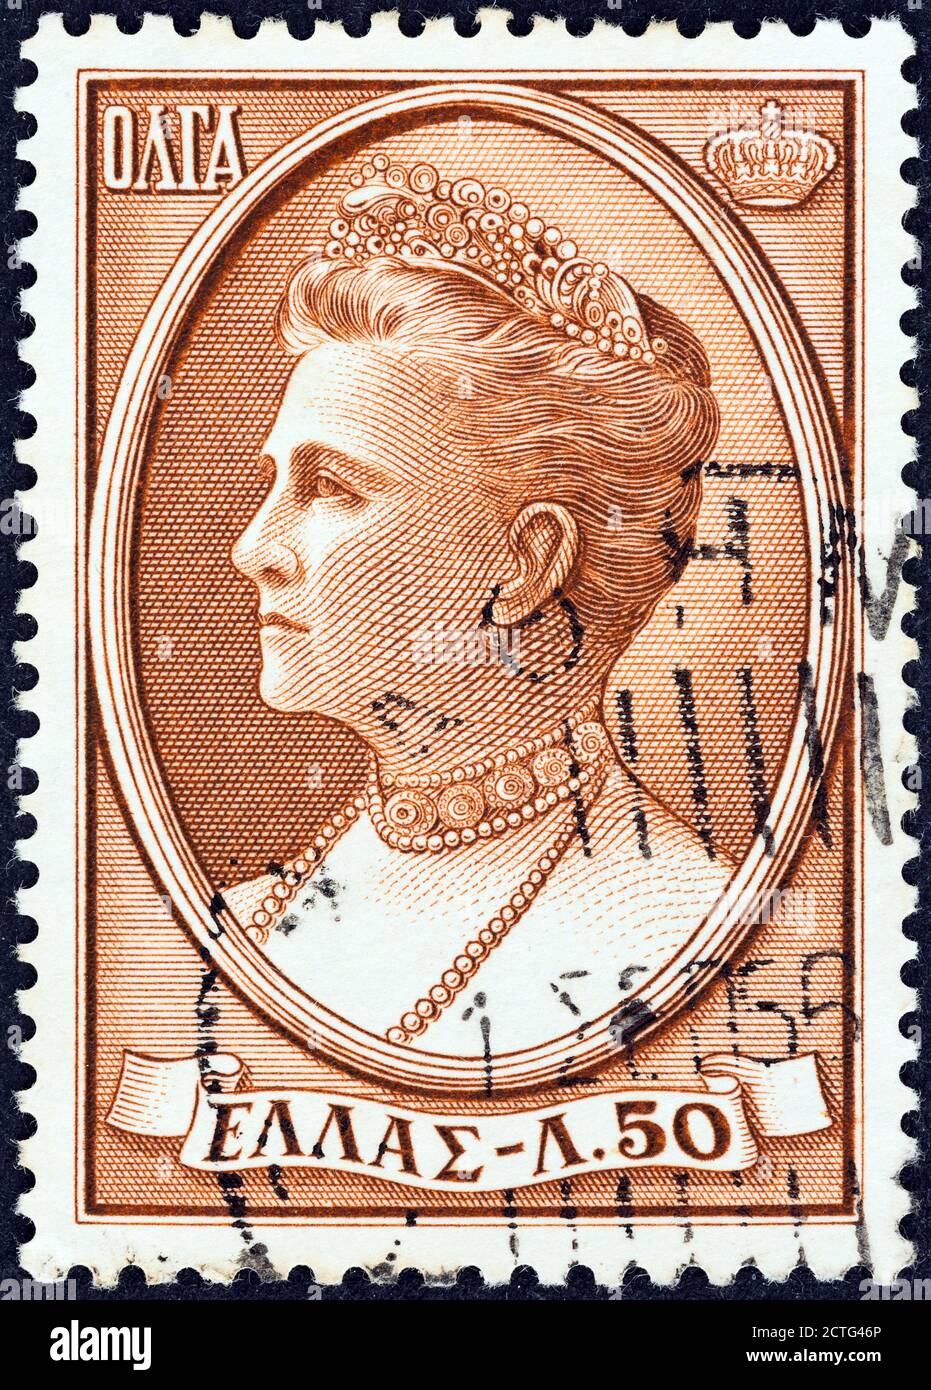 GRECIA - CIRCA 1956: Un francobollo stampato in Grecia mostra la regina Olga, circa 1956. Foto Stock